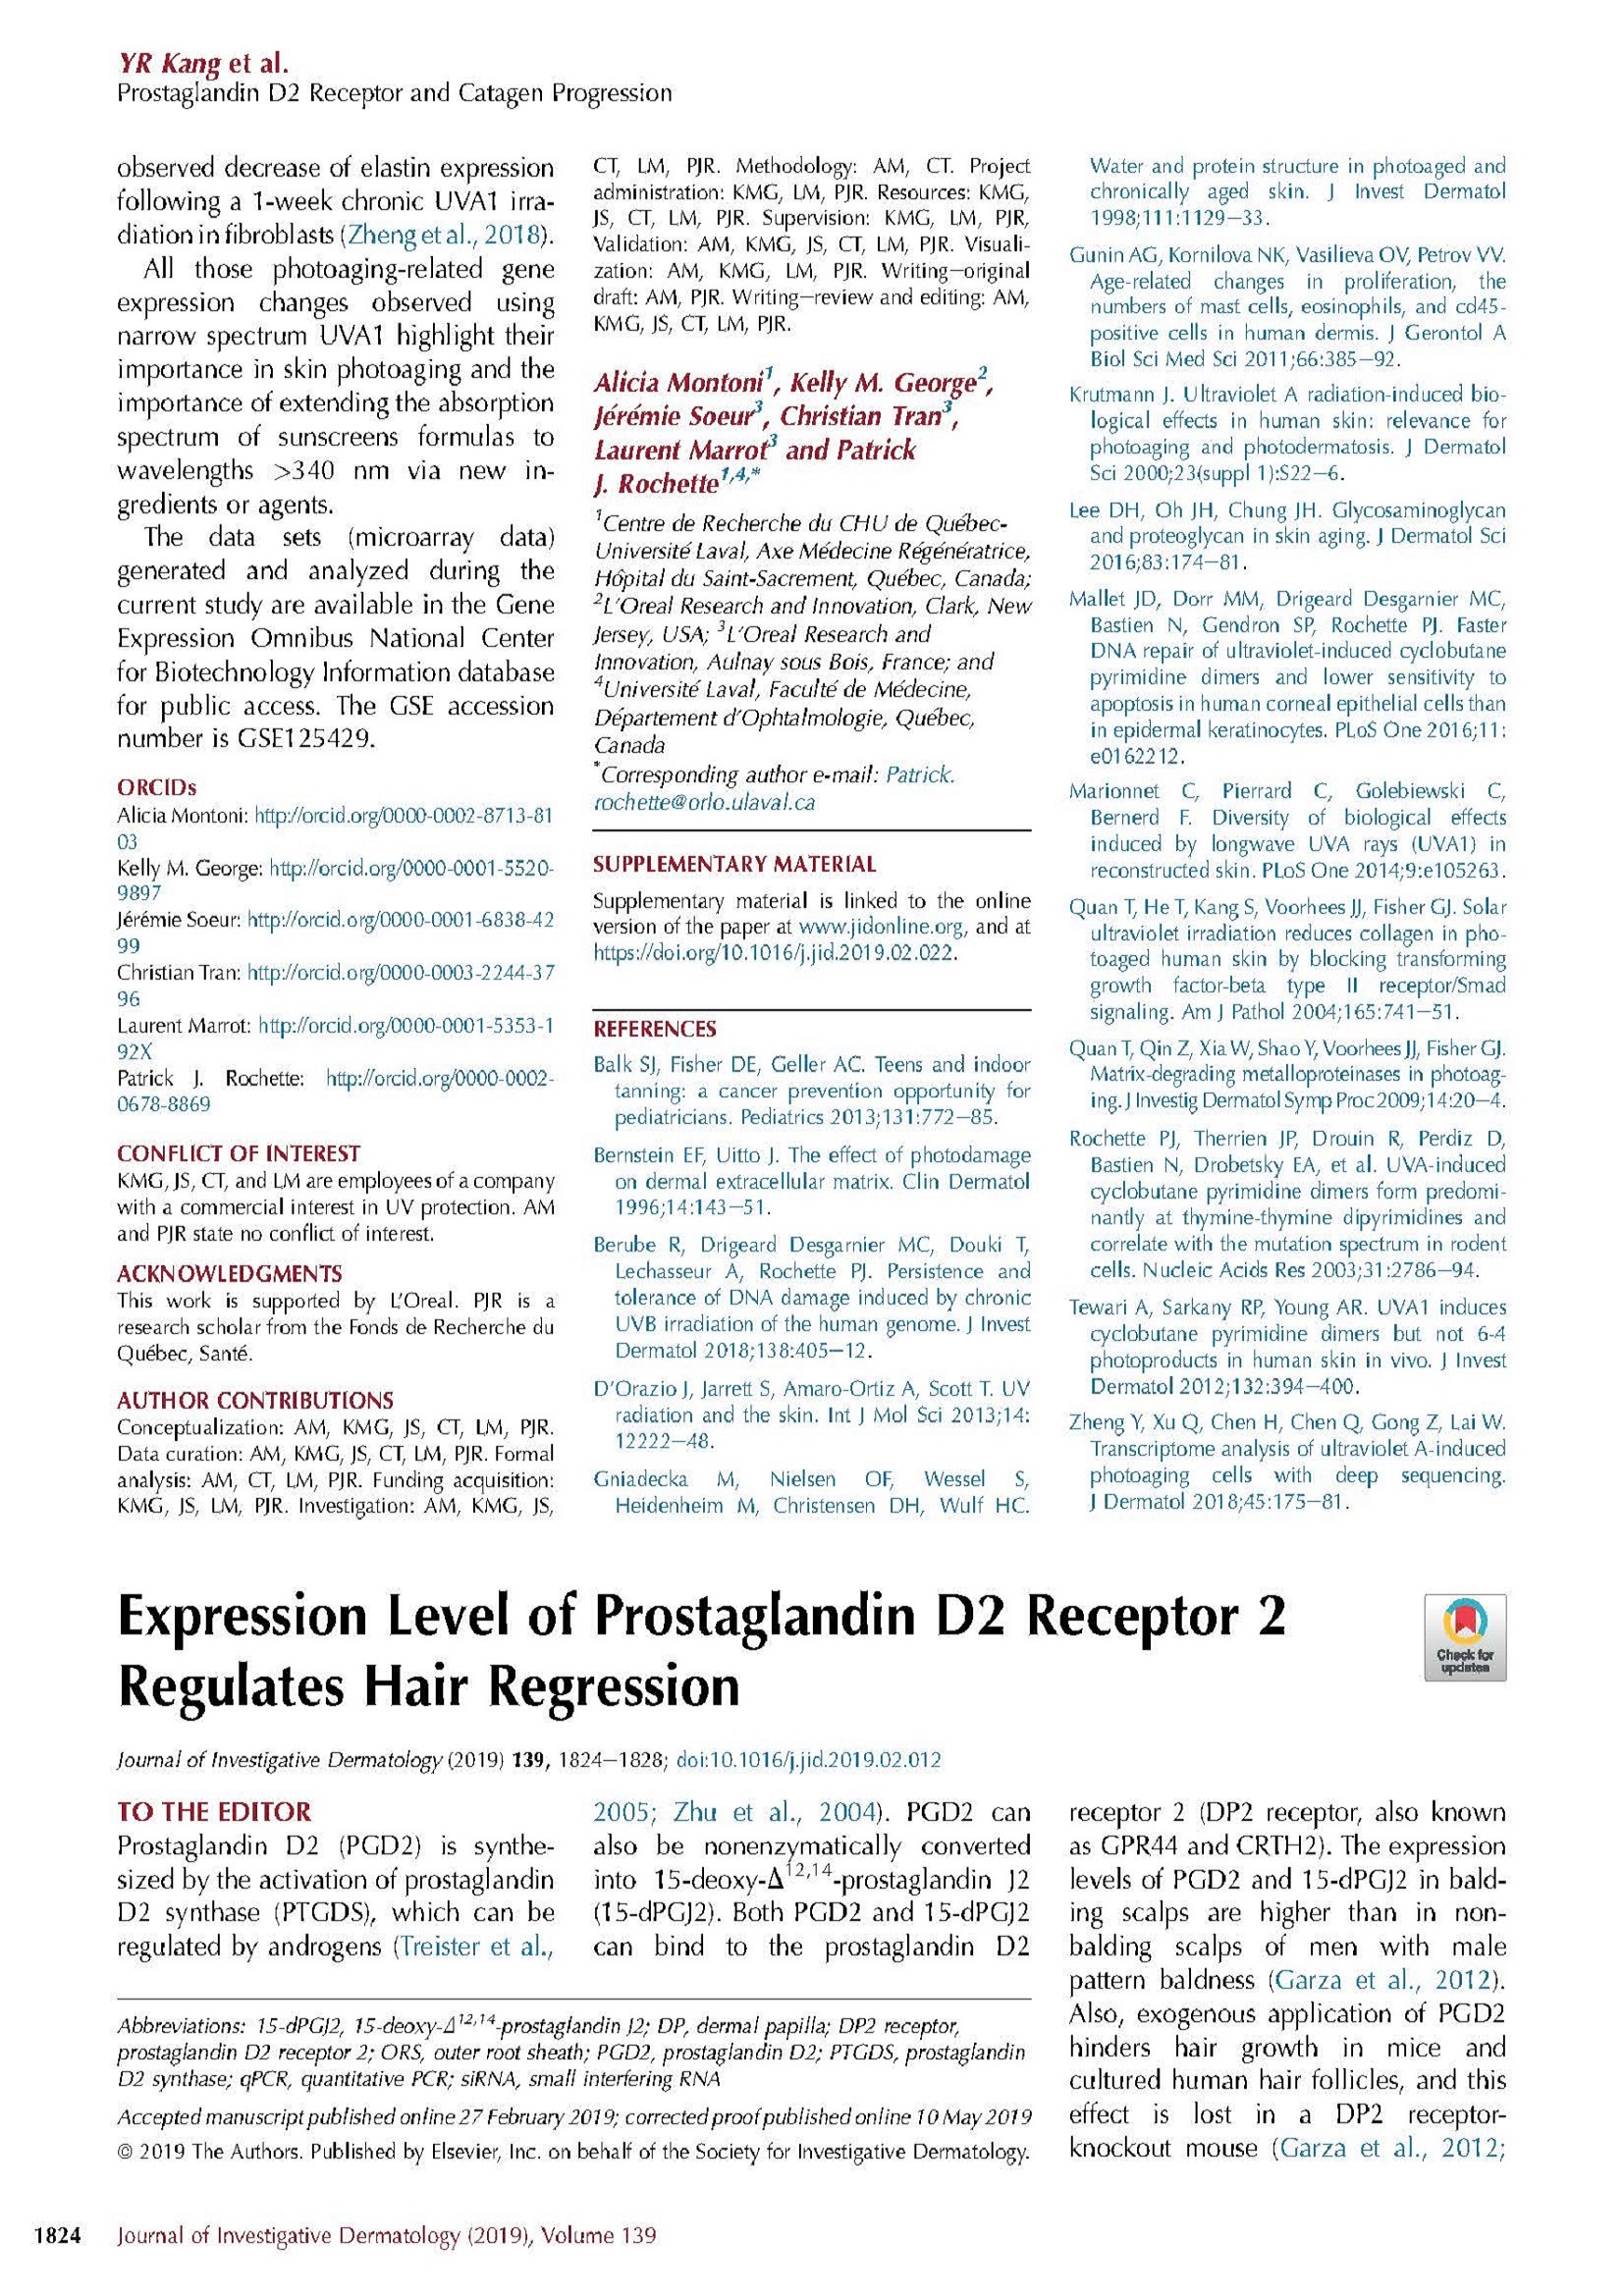 Expression-Level-of-Prostaglandin-D2-Receptor-2_2019_Journal-of-Investigativ